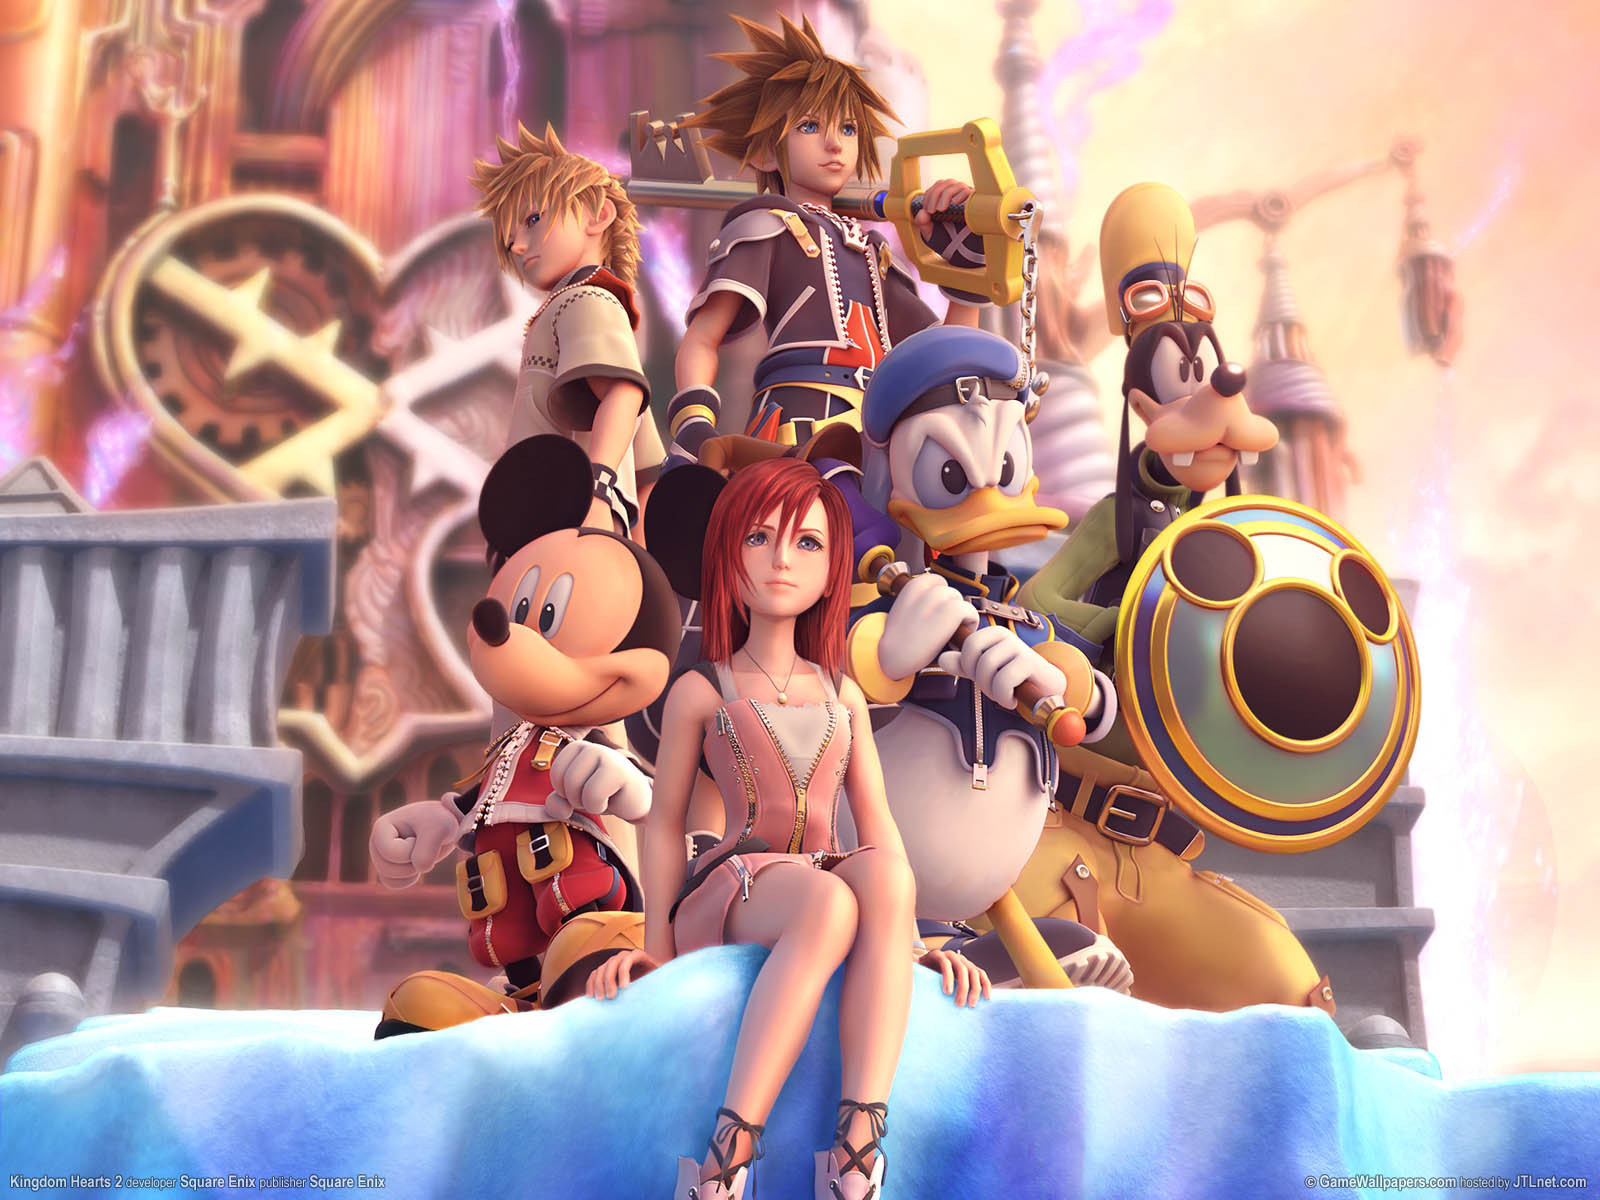 Kingdom Hearts II - Wikipedia - wide 2